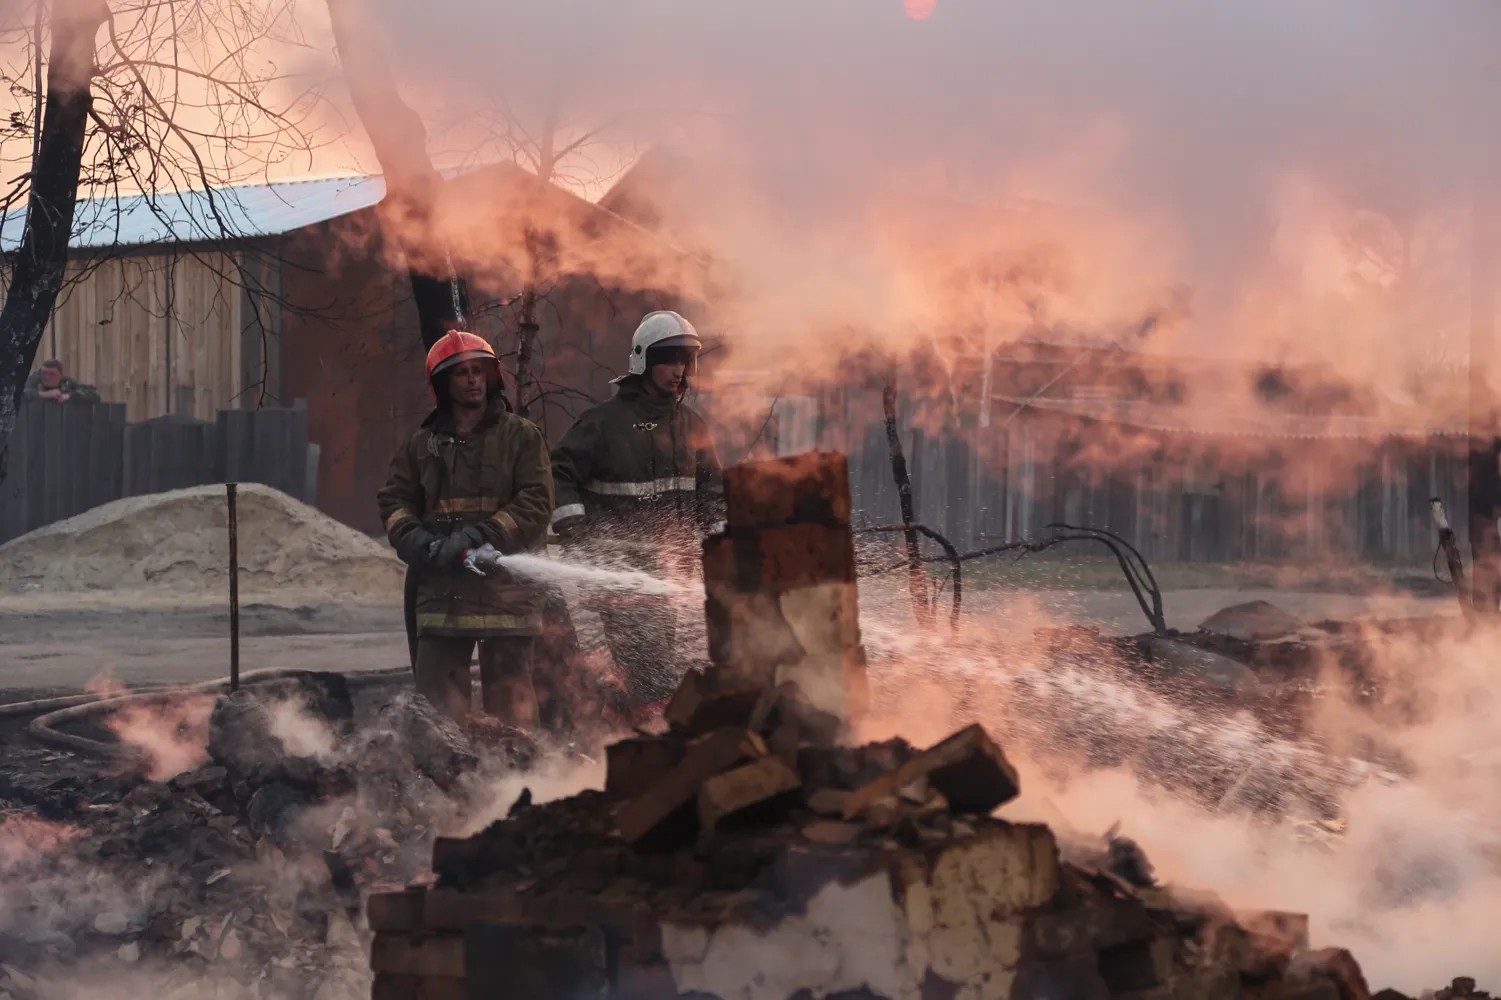 В Амурской области из-за природных пожаров уже сгорело 20 домов. Под угрозой еще 70 населенных пунктов Фото: РИА Новости